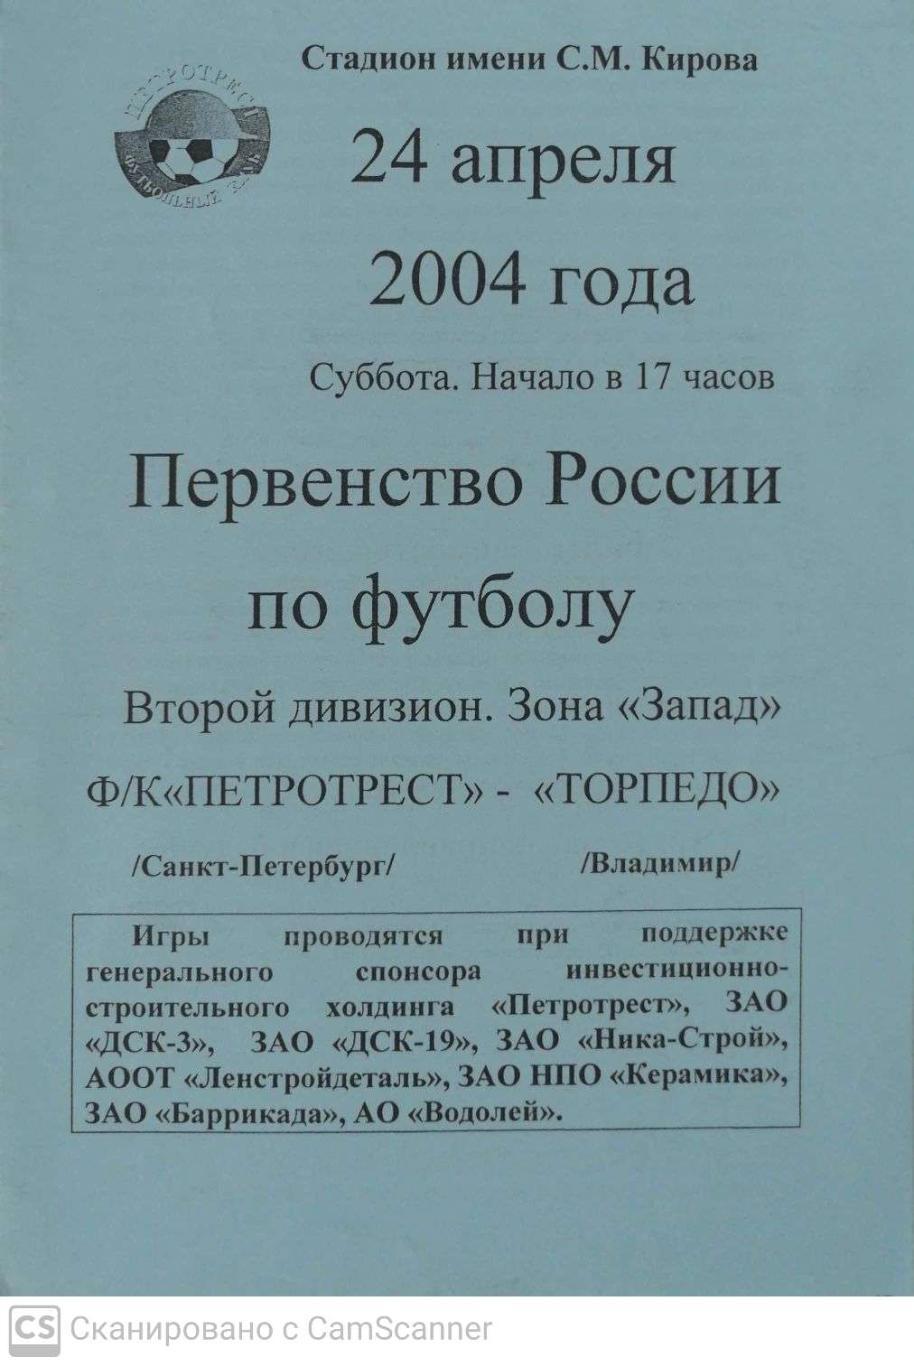 Второй дивизион.Петротрест СПб - Торпедо Владимир 24.04.2004